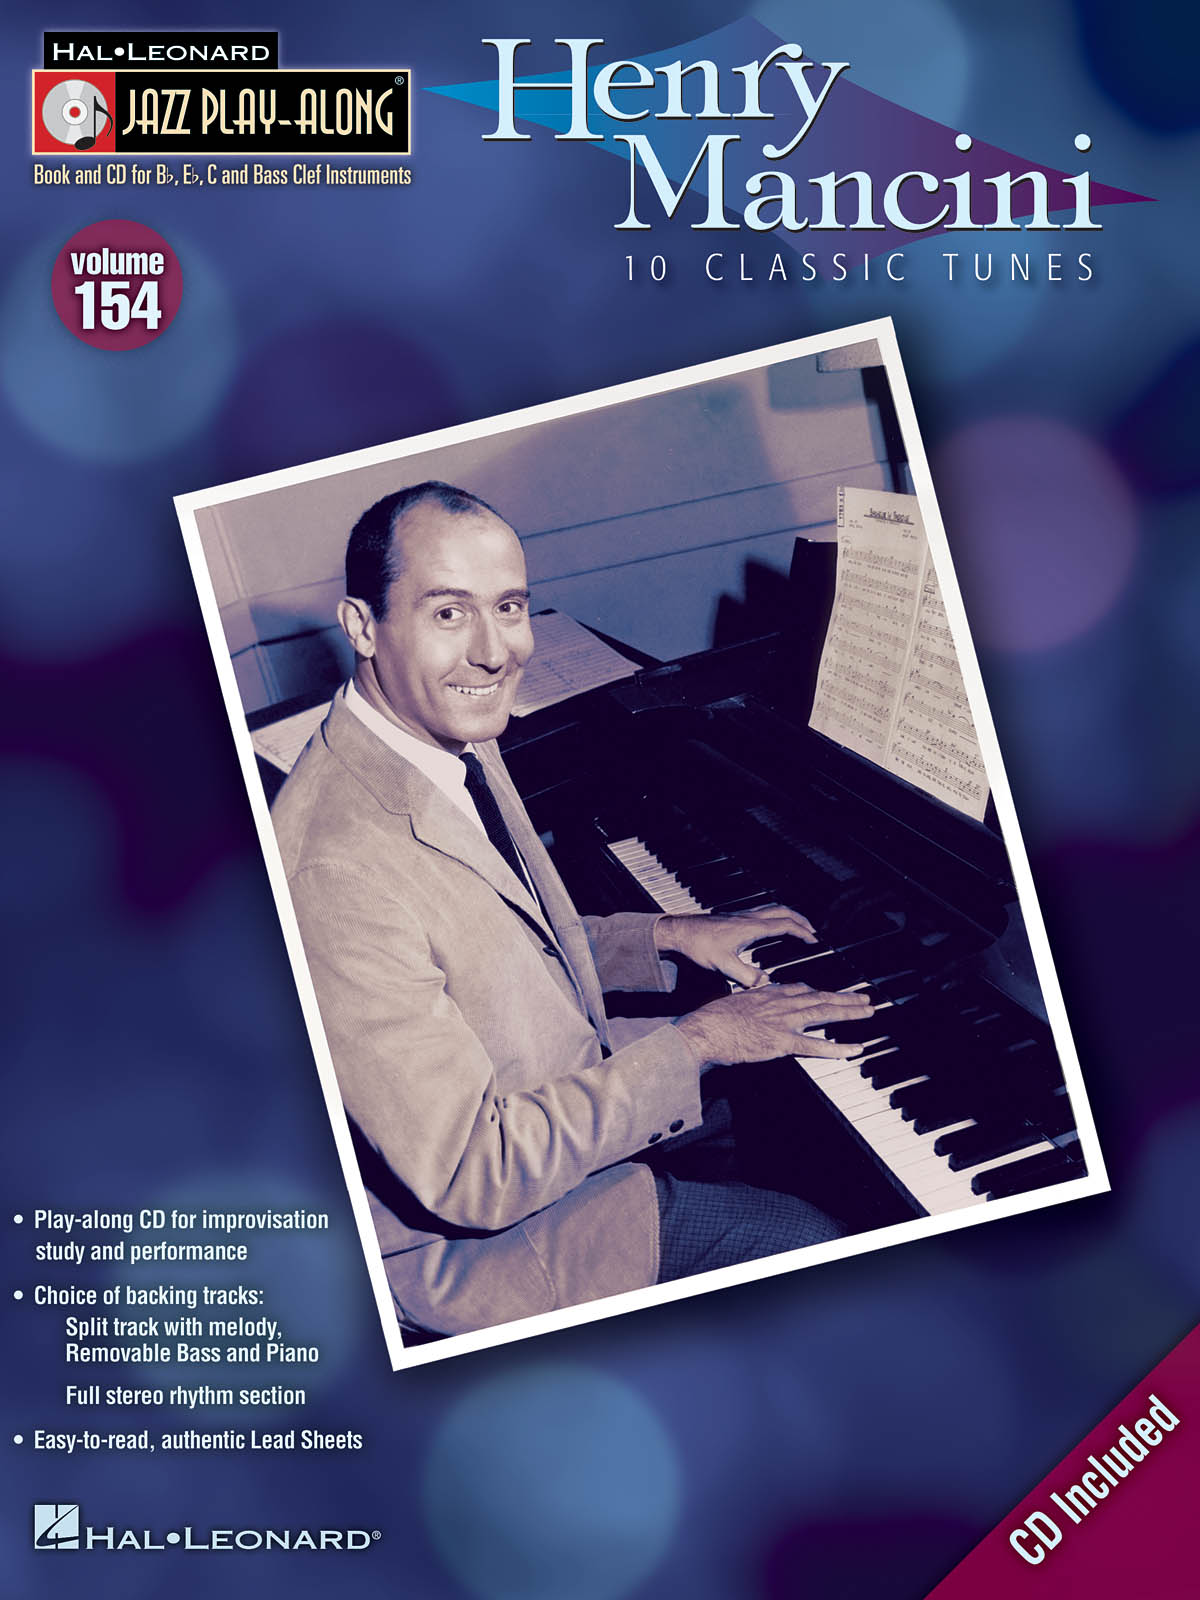 Henry Mancini - Jazz Play-Along Volume 154 - melodie s akordy pro nástroje v ladění C